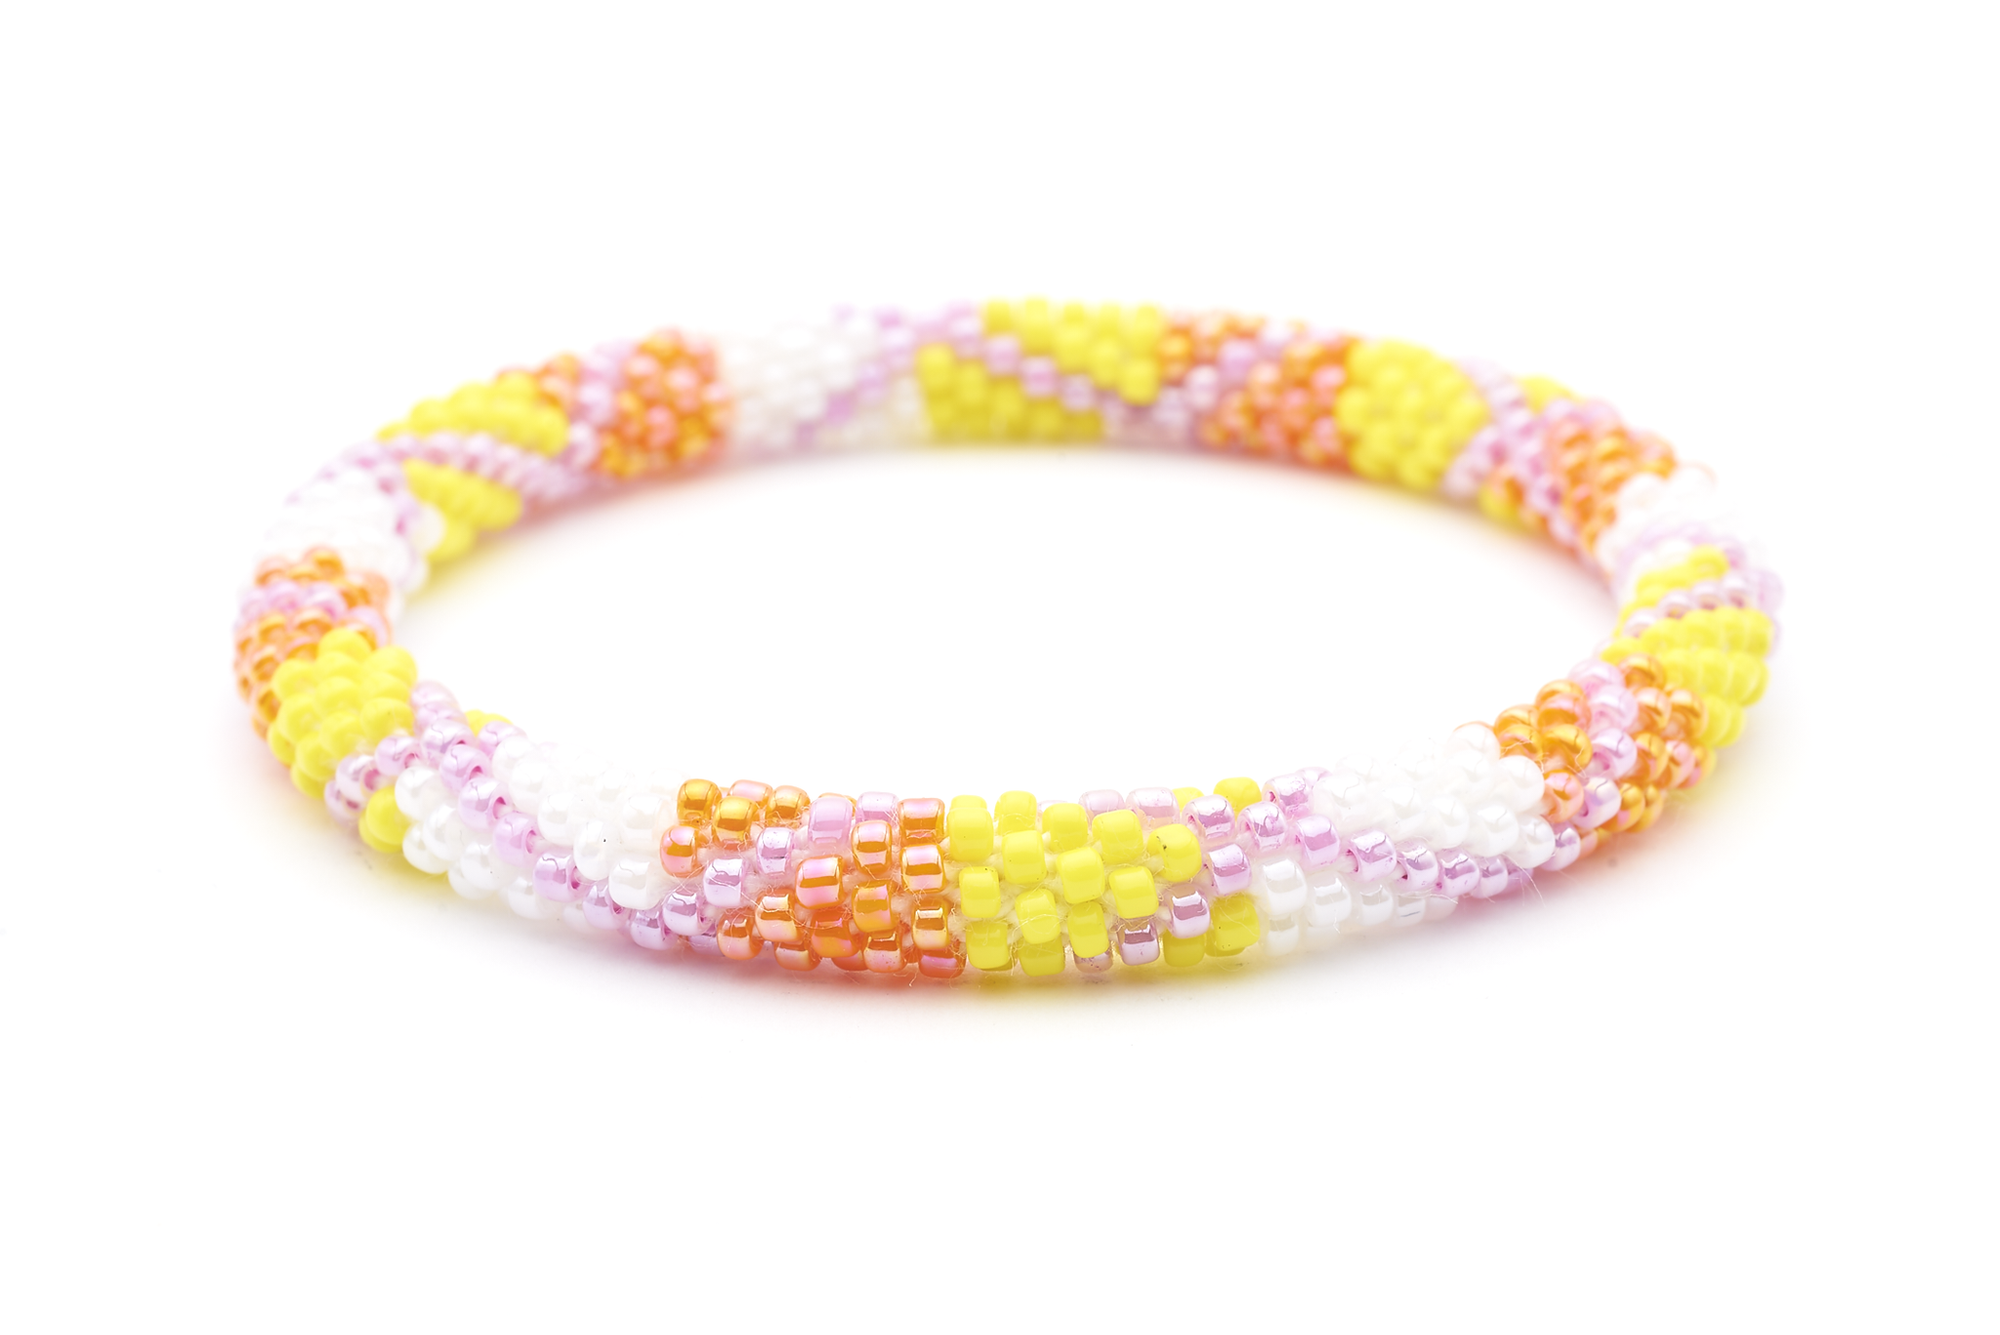 Sashka Co. Extended 8" Bracelet Pink / Orange / White / Yellow Easter Bracelet - Extended 8"